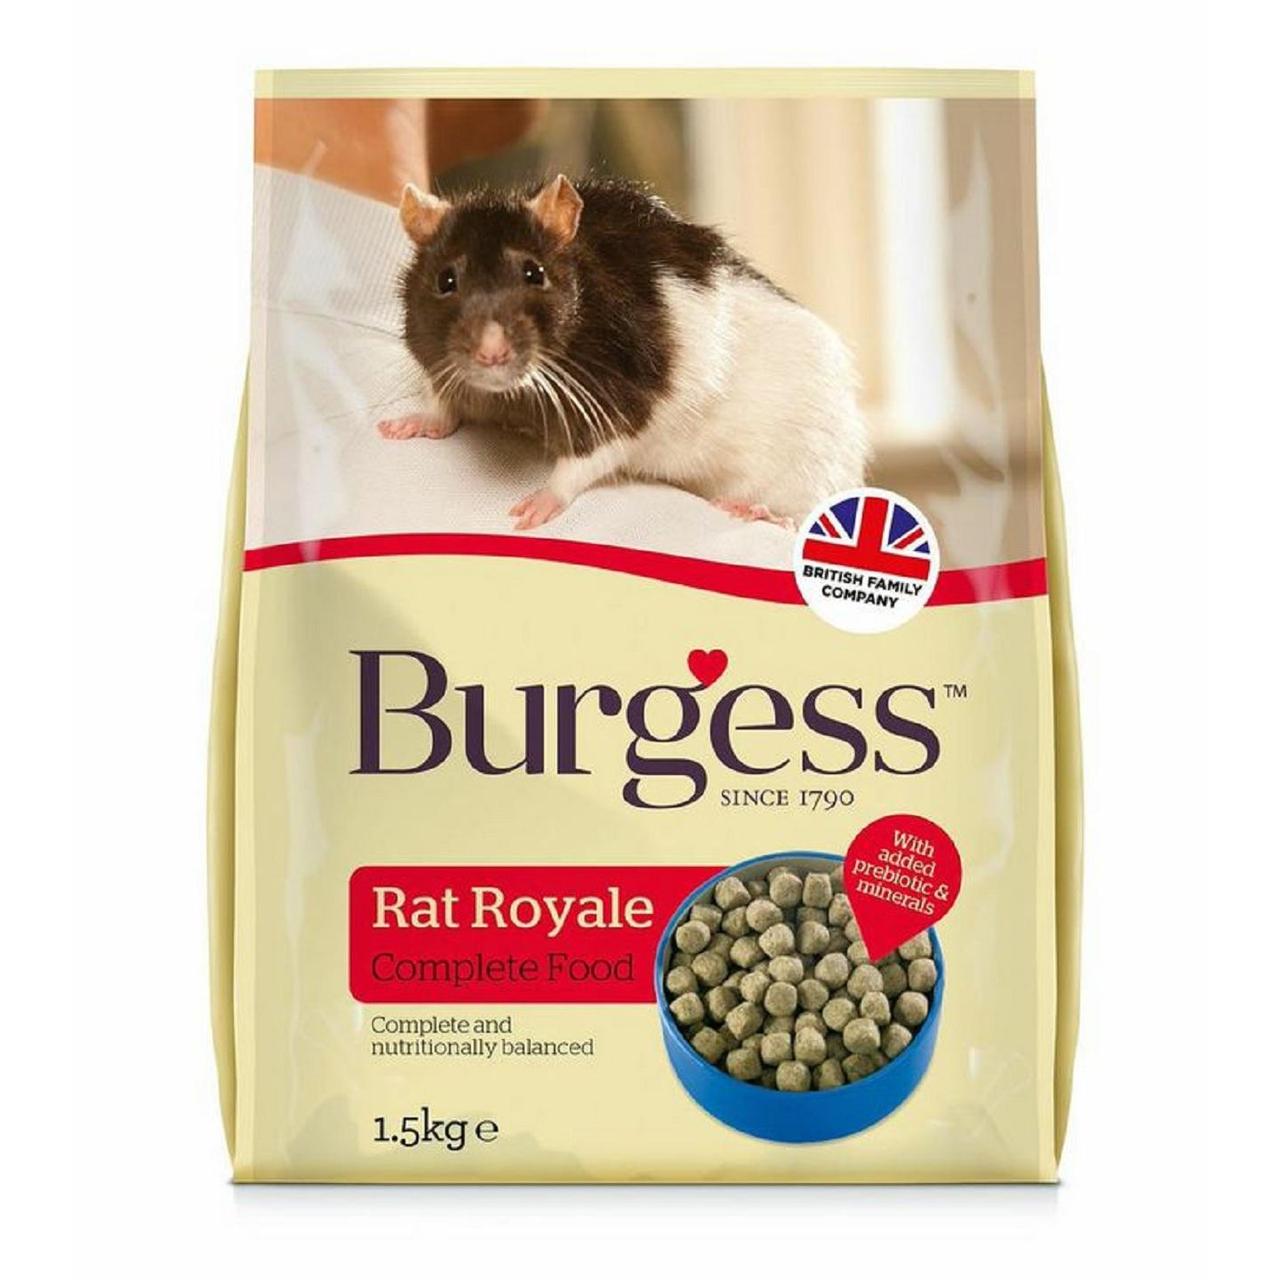 An image of Burgess Supa Rat Royale Food